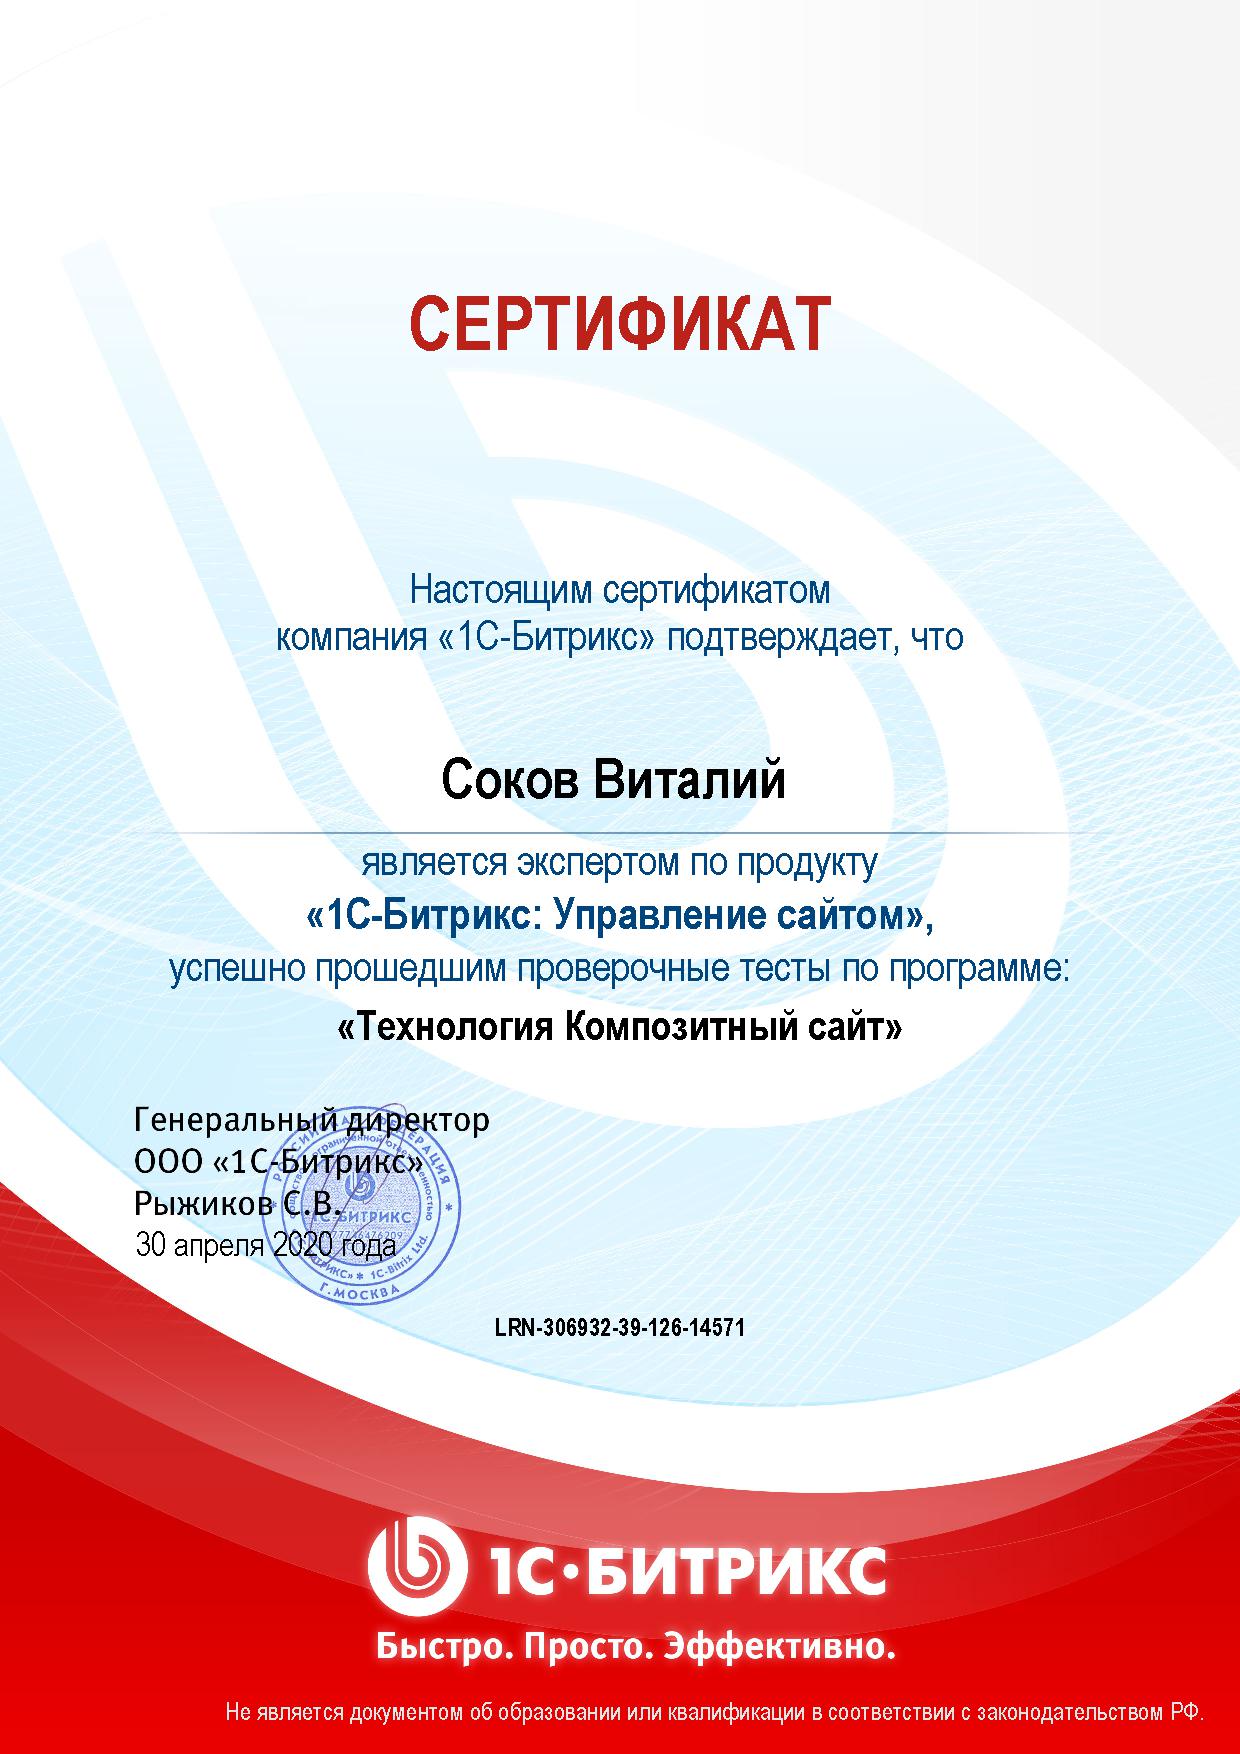 Сертификат Соков В.М., курс "1С-Битрикс: Управление сайтом. Технология Композитный сайт"